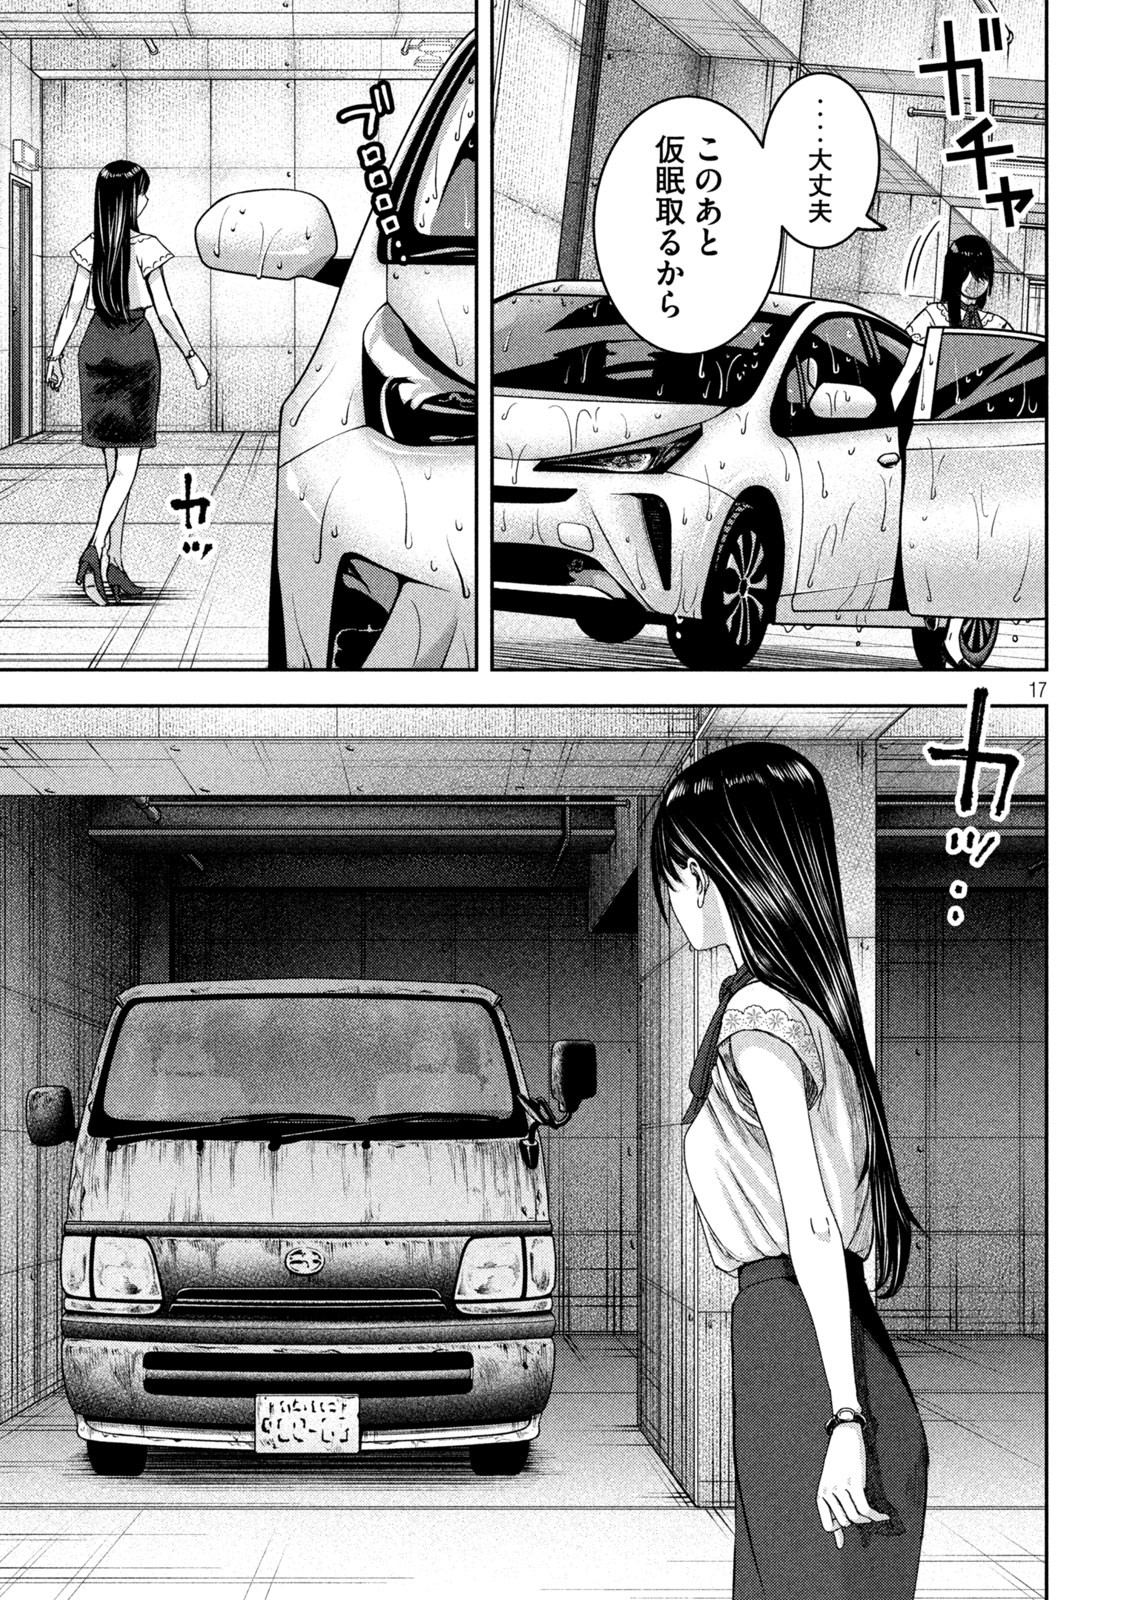 Watashi no Arika - Chapter 37 - Page 17